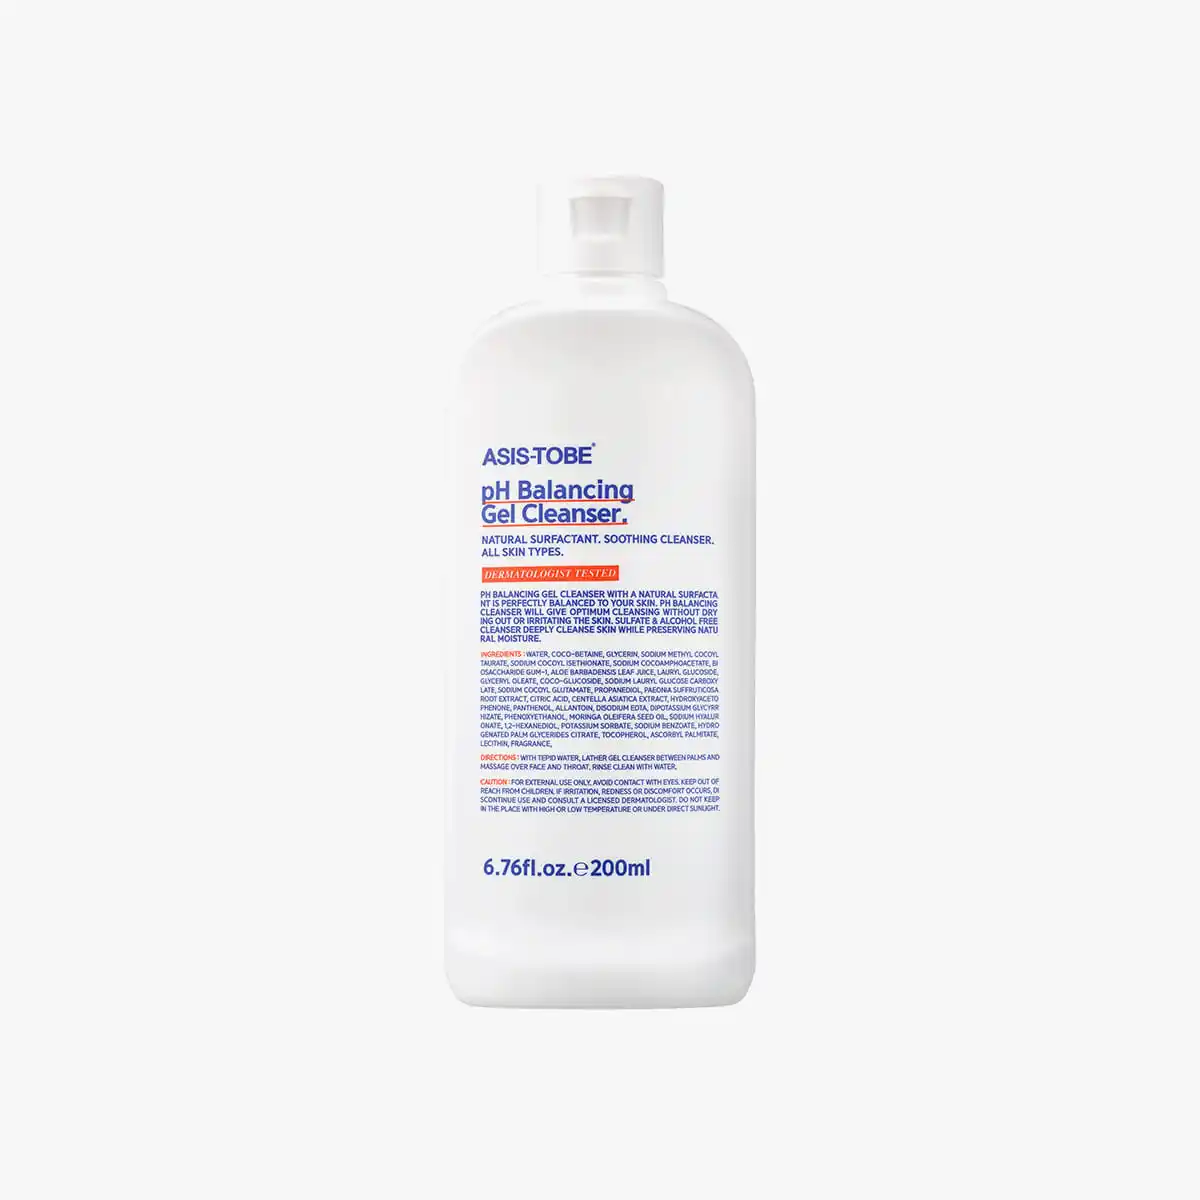 Limpiador de Gel con equilibrio de pH, cosmético de Corea, ASIS-TOBE, 200ml, hidratante, gel relajante natural surfactante, CPNP, aprobado